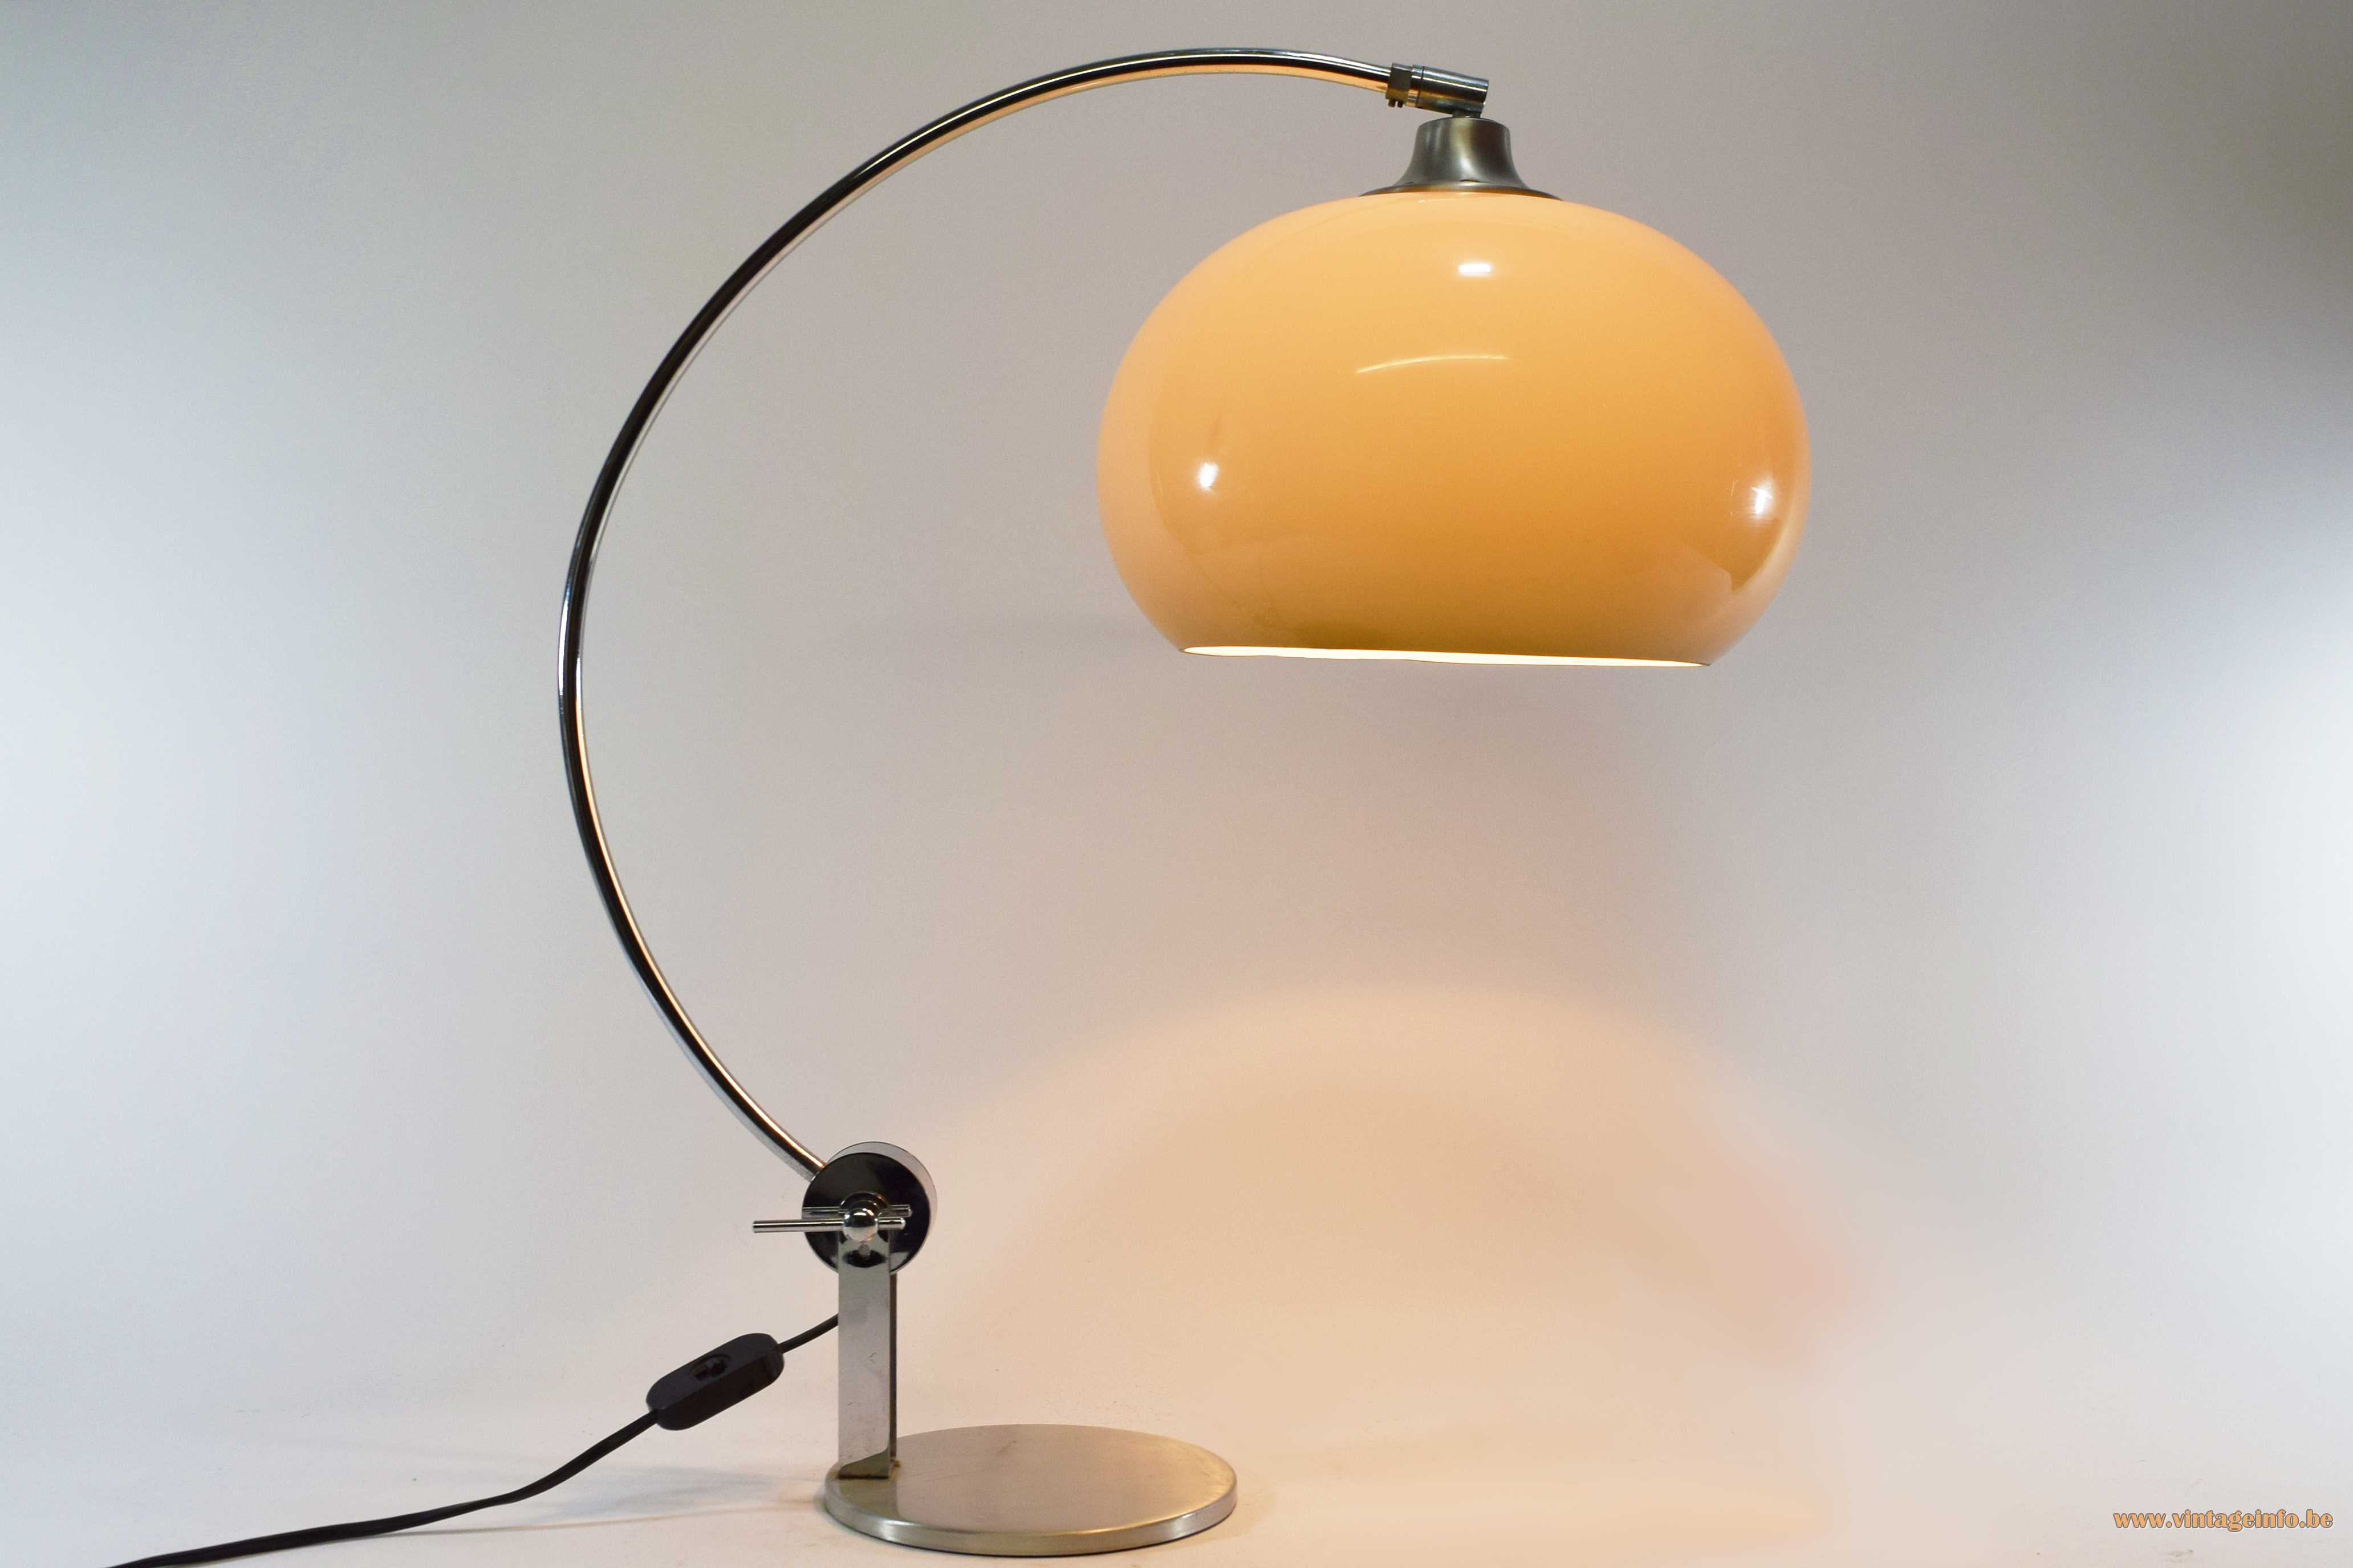 Chrome Arc Table Lamp Vintageinfo, Vintage Chrome Arc Lamp